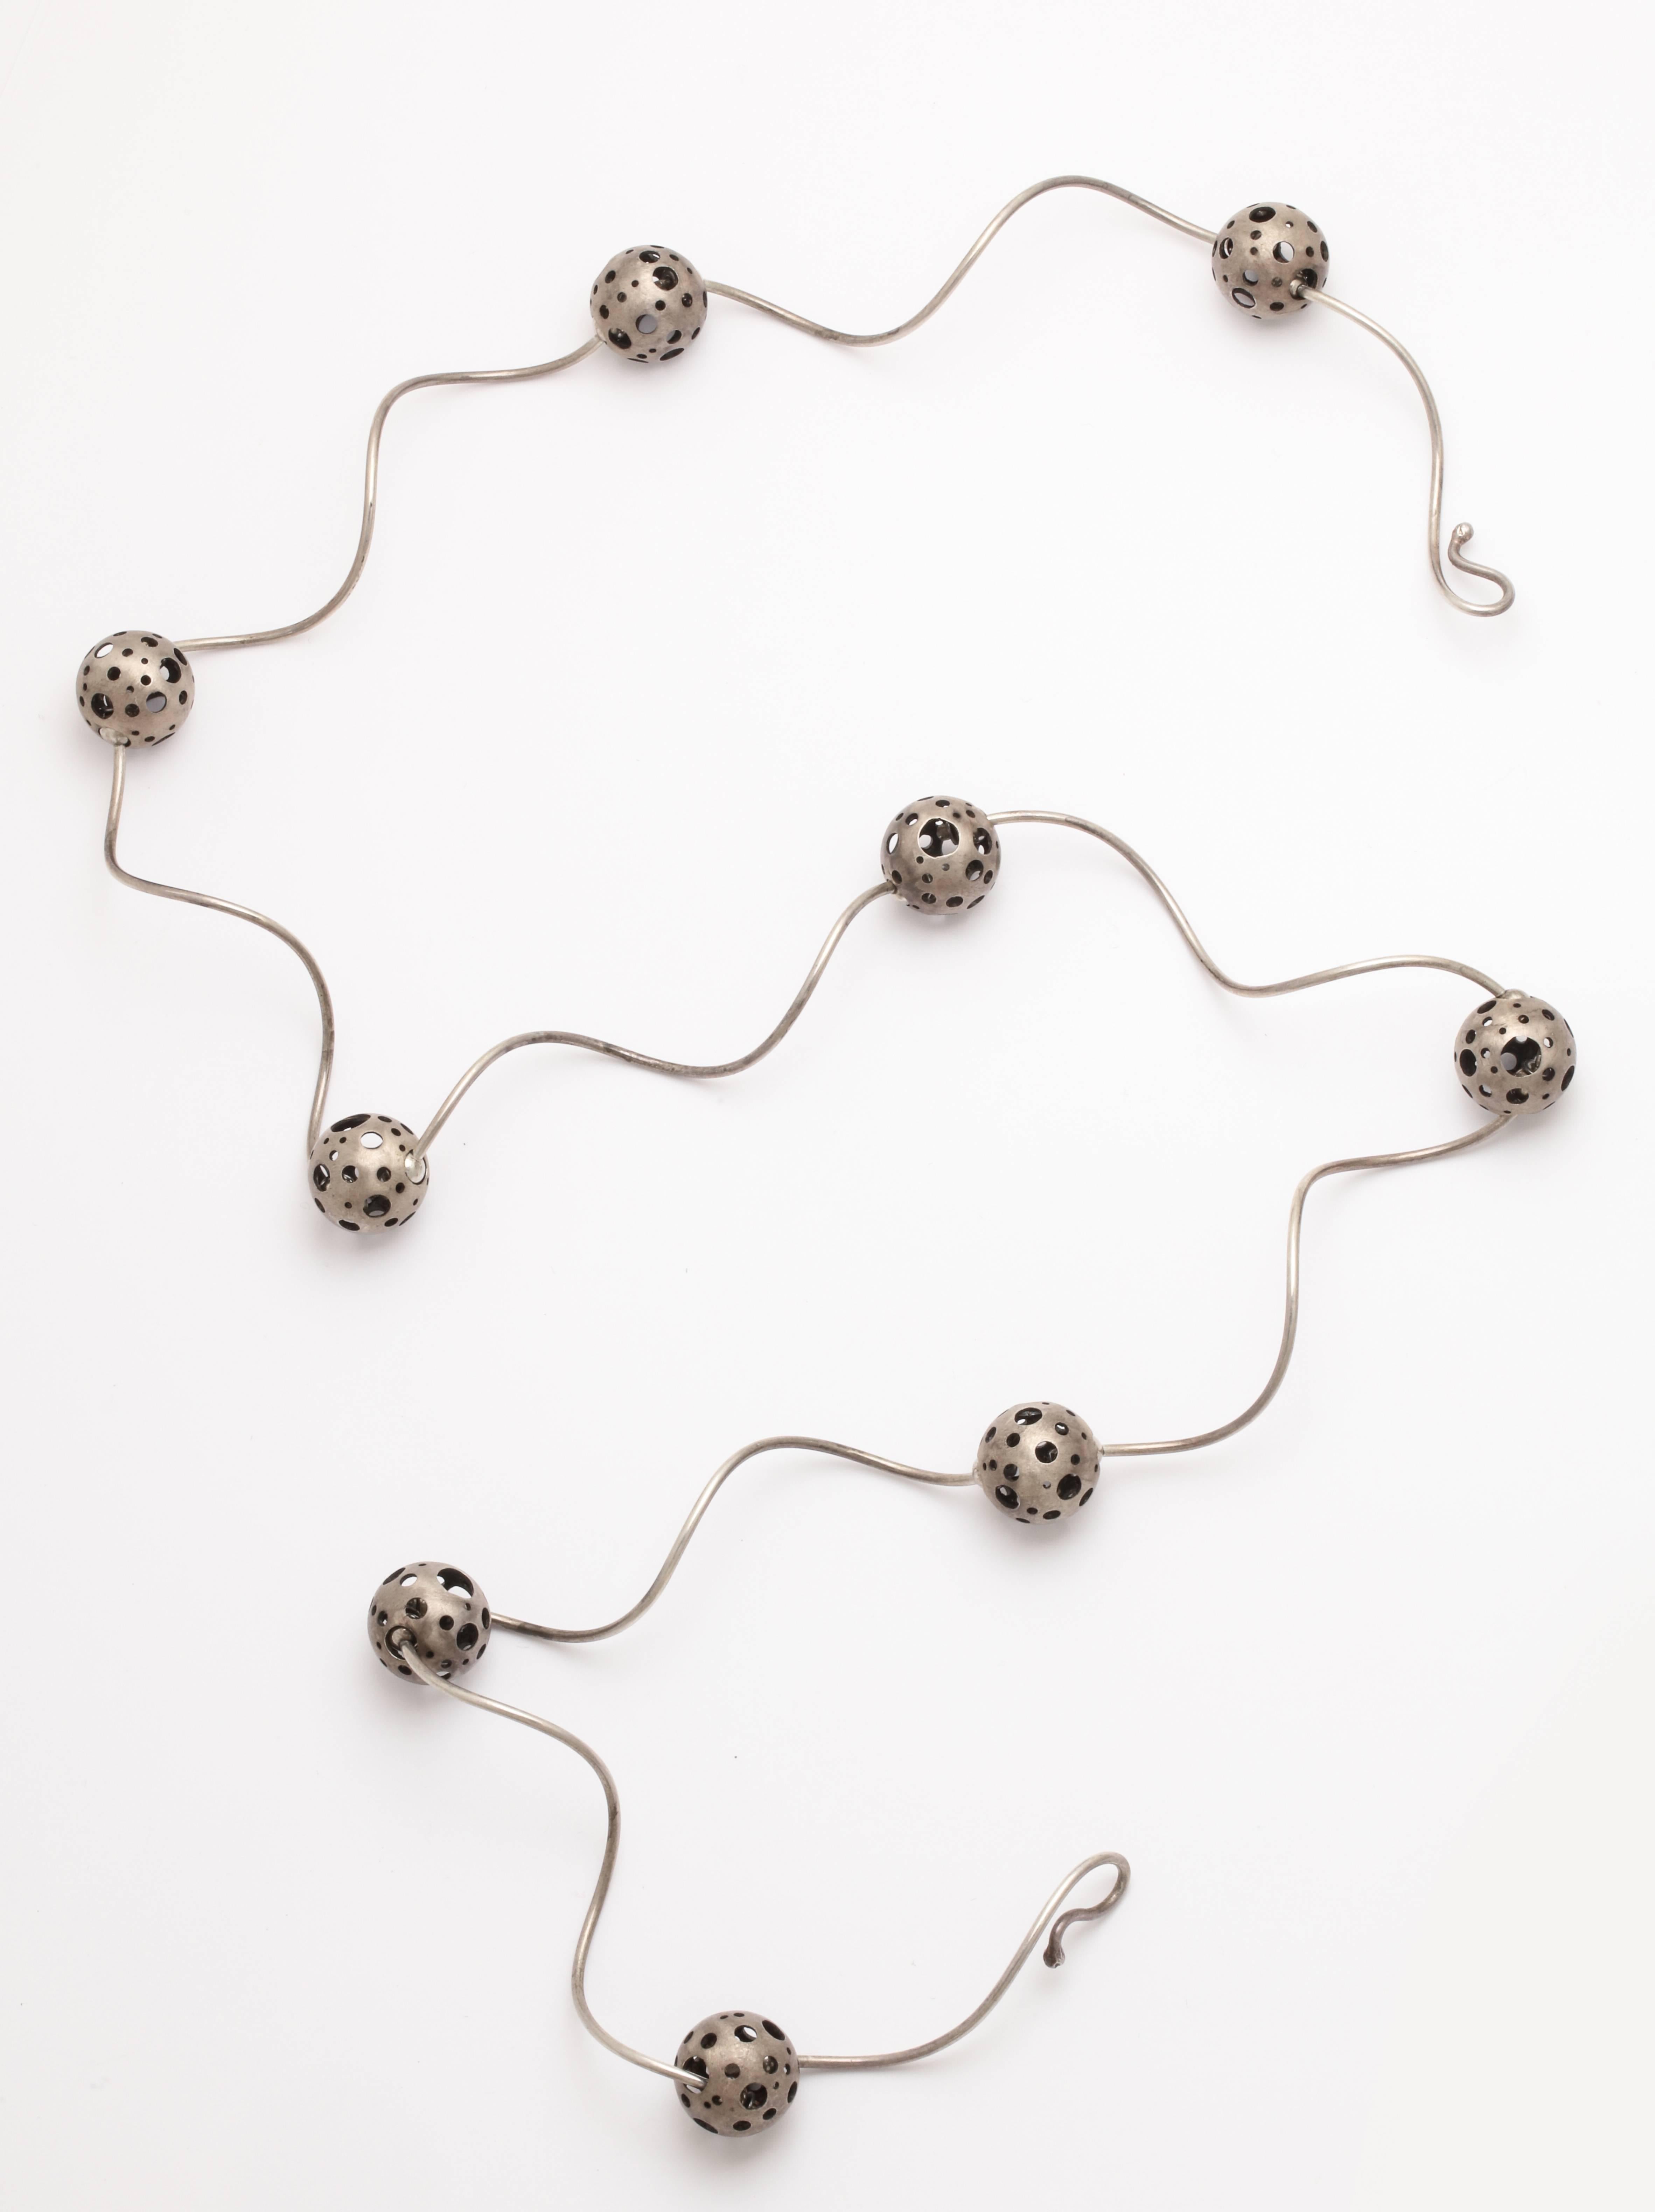 Elizabeth Garvin Modernist Silver Necklace  For Sale 3